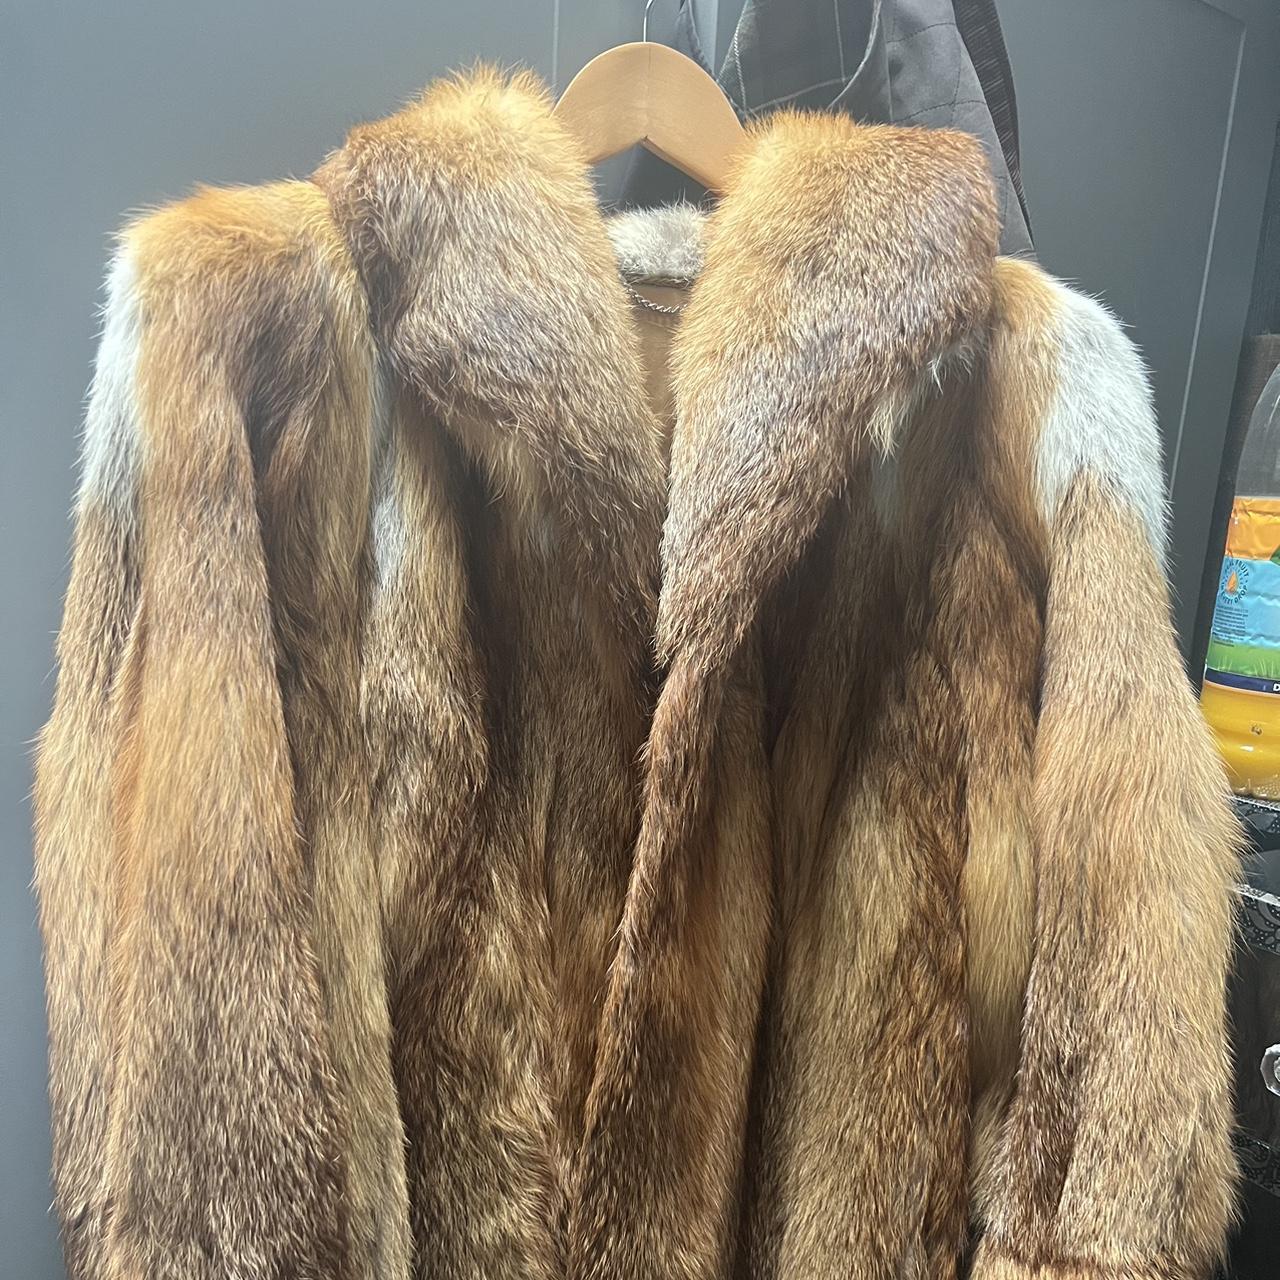 genuine vintage fox fur jacket #furcoat #vintage - Depop